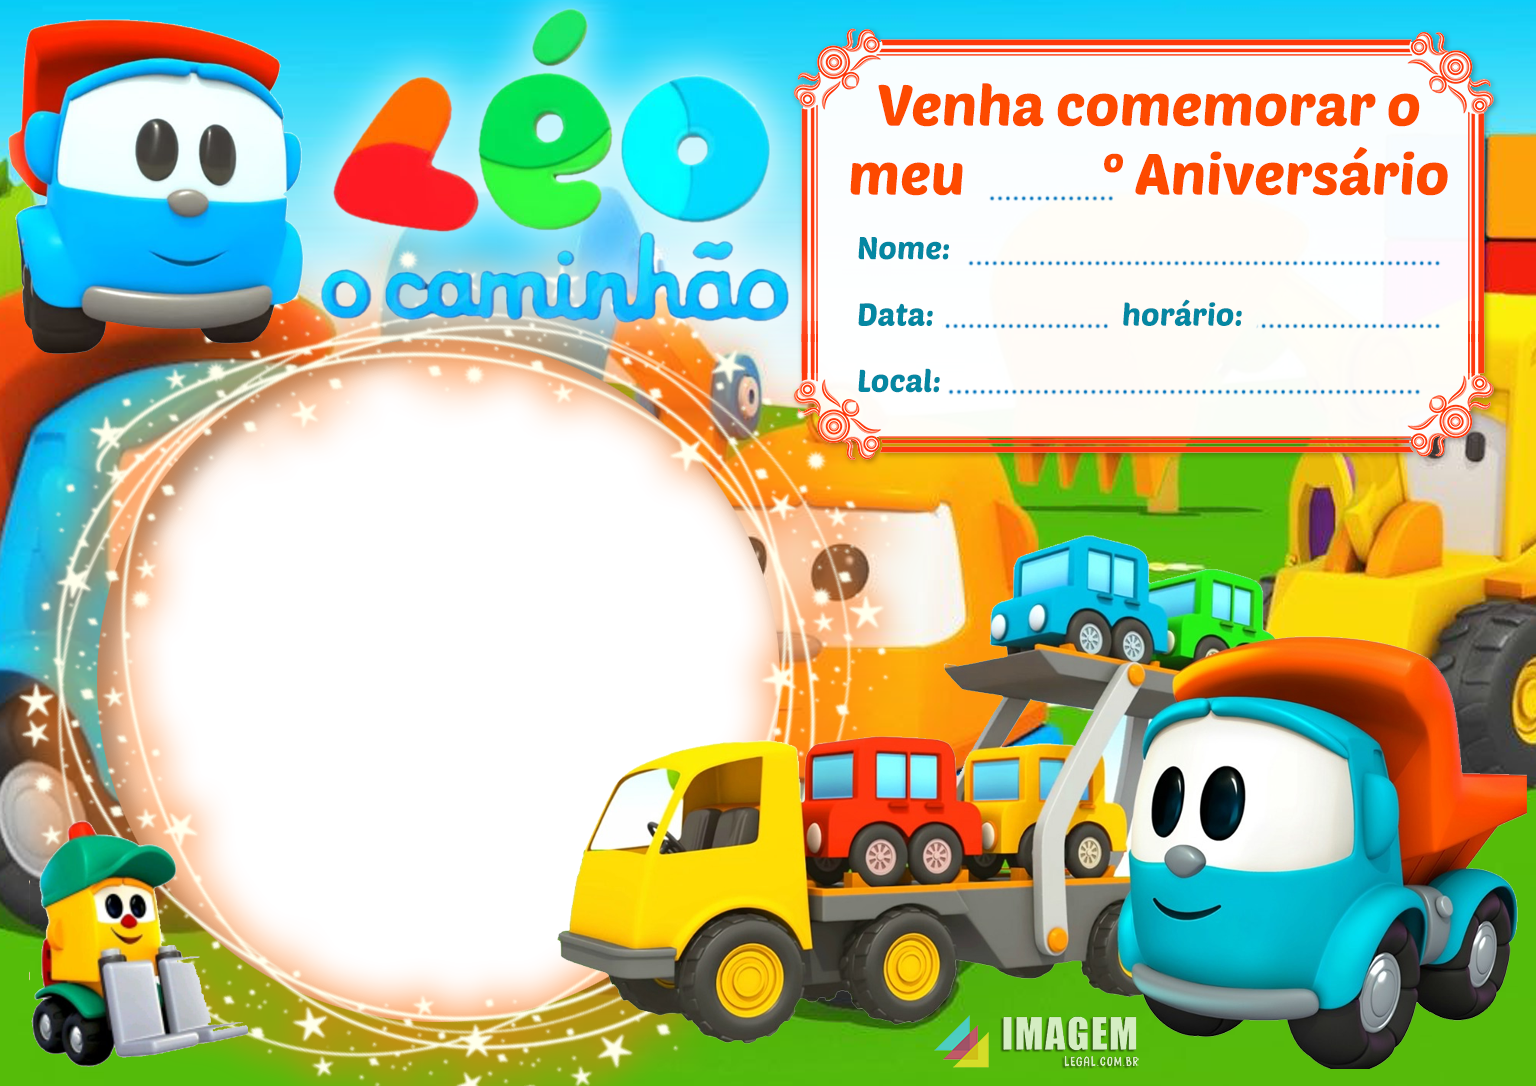 Convite Digital de Aniversário Léo o Caminhão - Imagem Legal